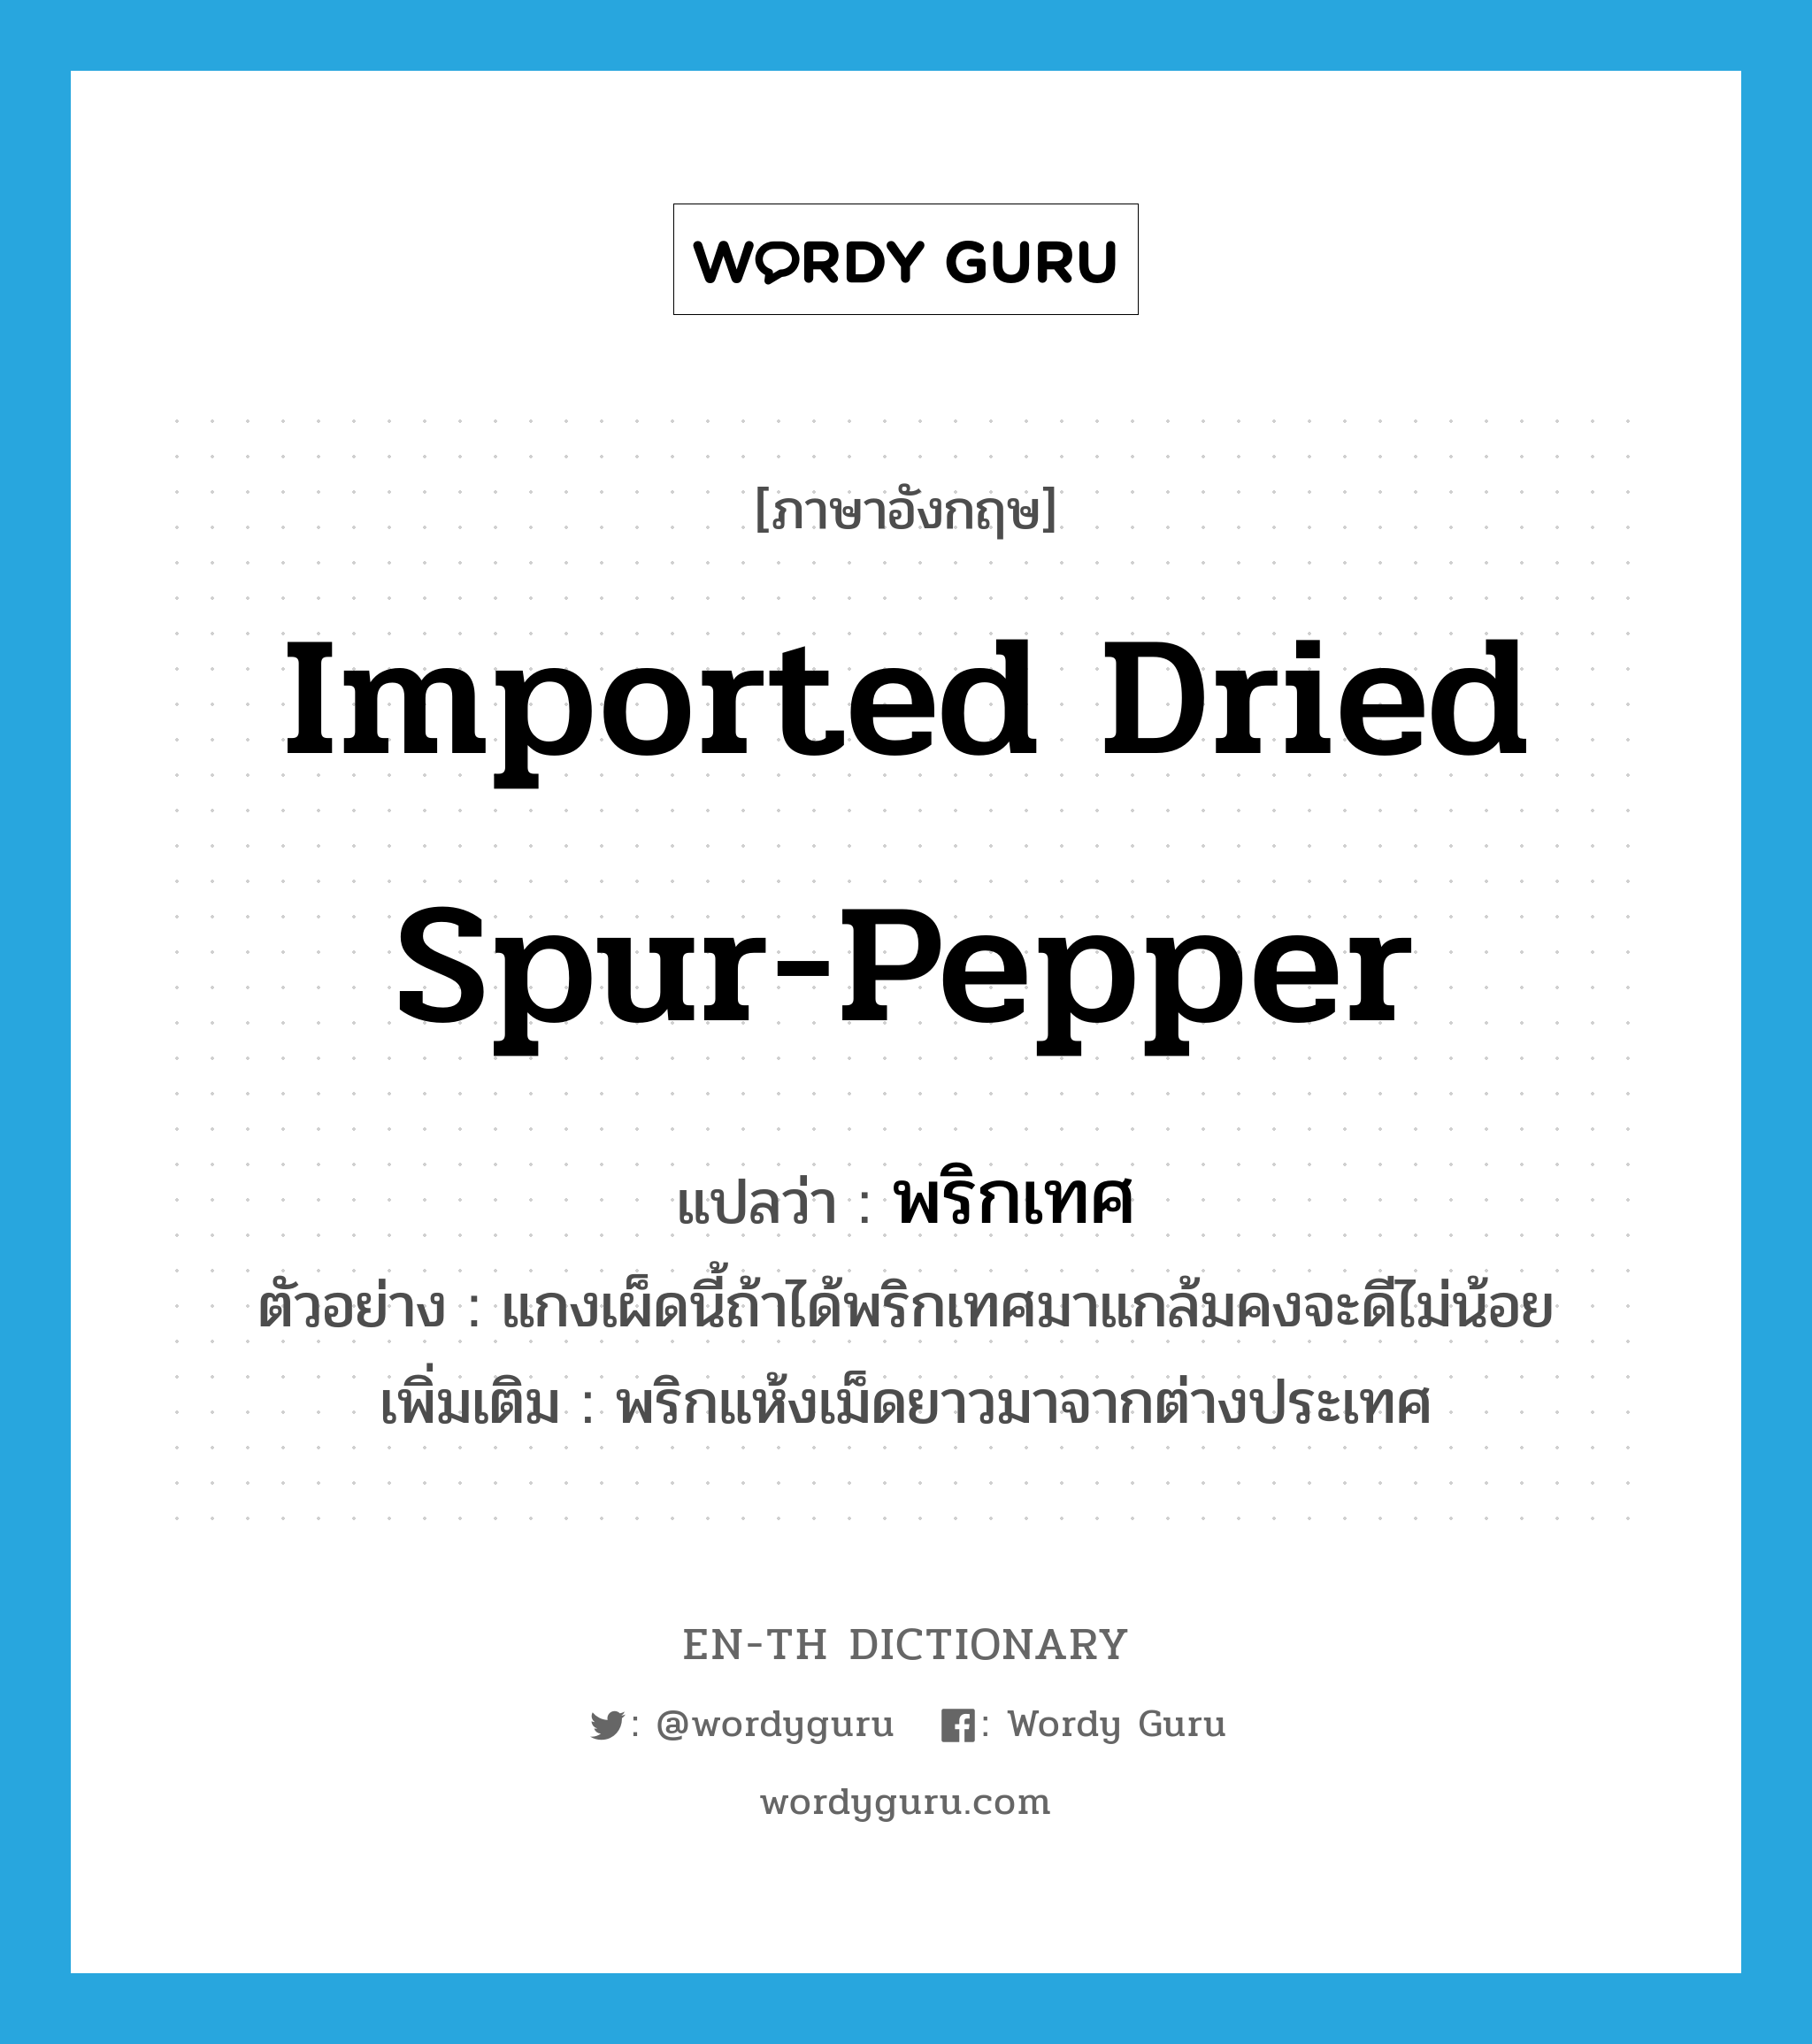 imported dried spur-pepper แปลว่า?, คำศัพท์ภาษาอังกฤษ imported dried spur-pepper แปลว่า พริกเทศ ประเภท N ตัวอย่าง แกงเผ็ดนี้ถ้าได้พริกเทศมาแกล้มคงจะดีไม่น้อย เพิ่มเติม พริกแห้งเม็ดยาวมาจากต่างประเทศ หมวด N